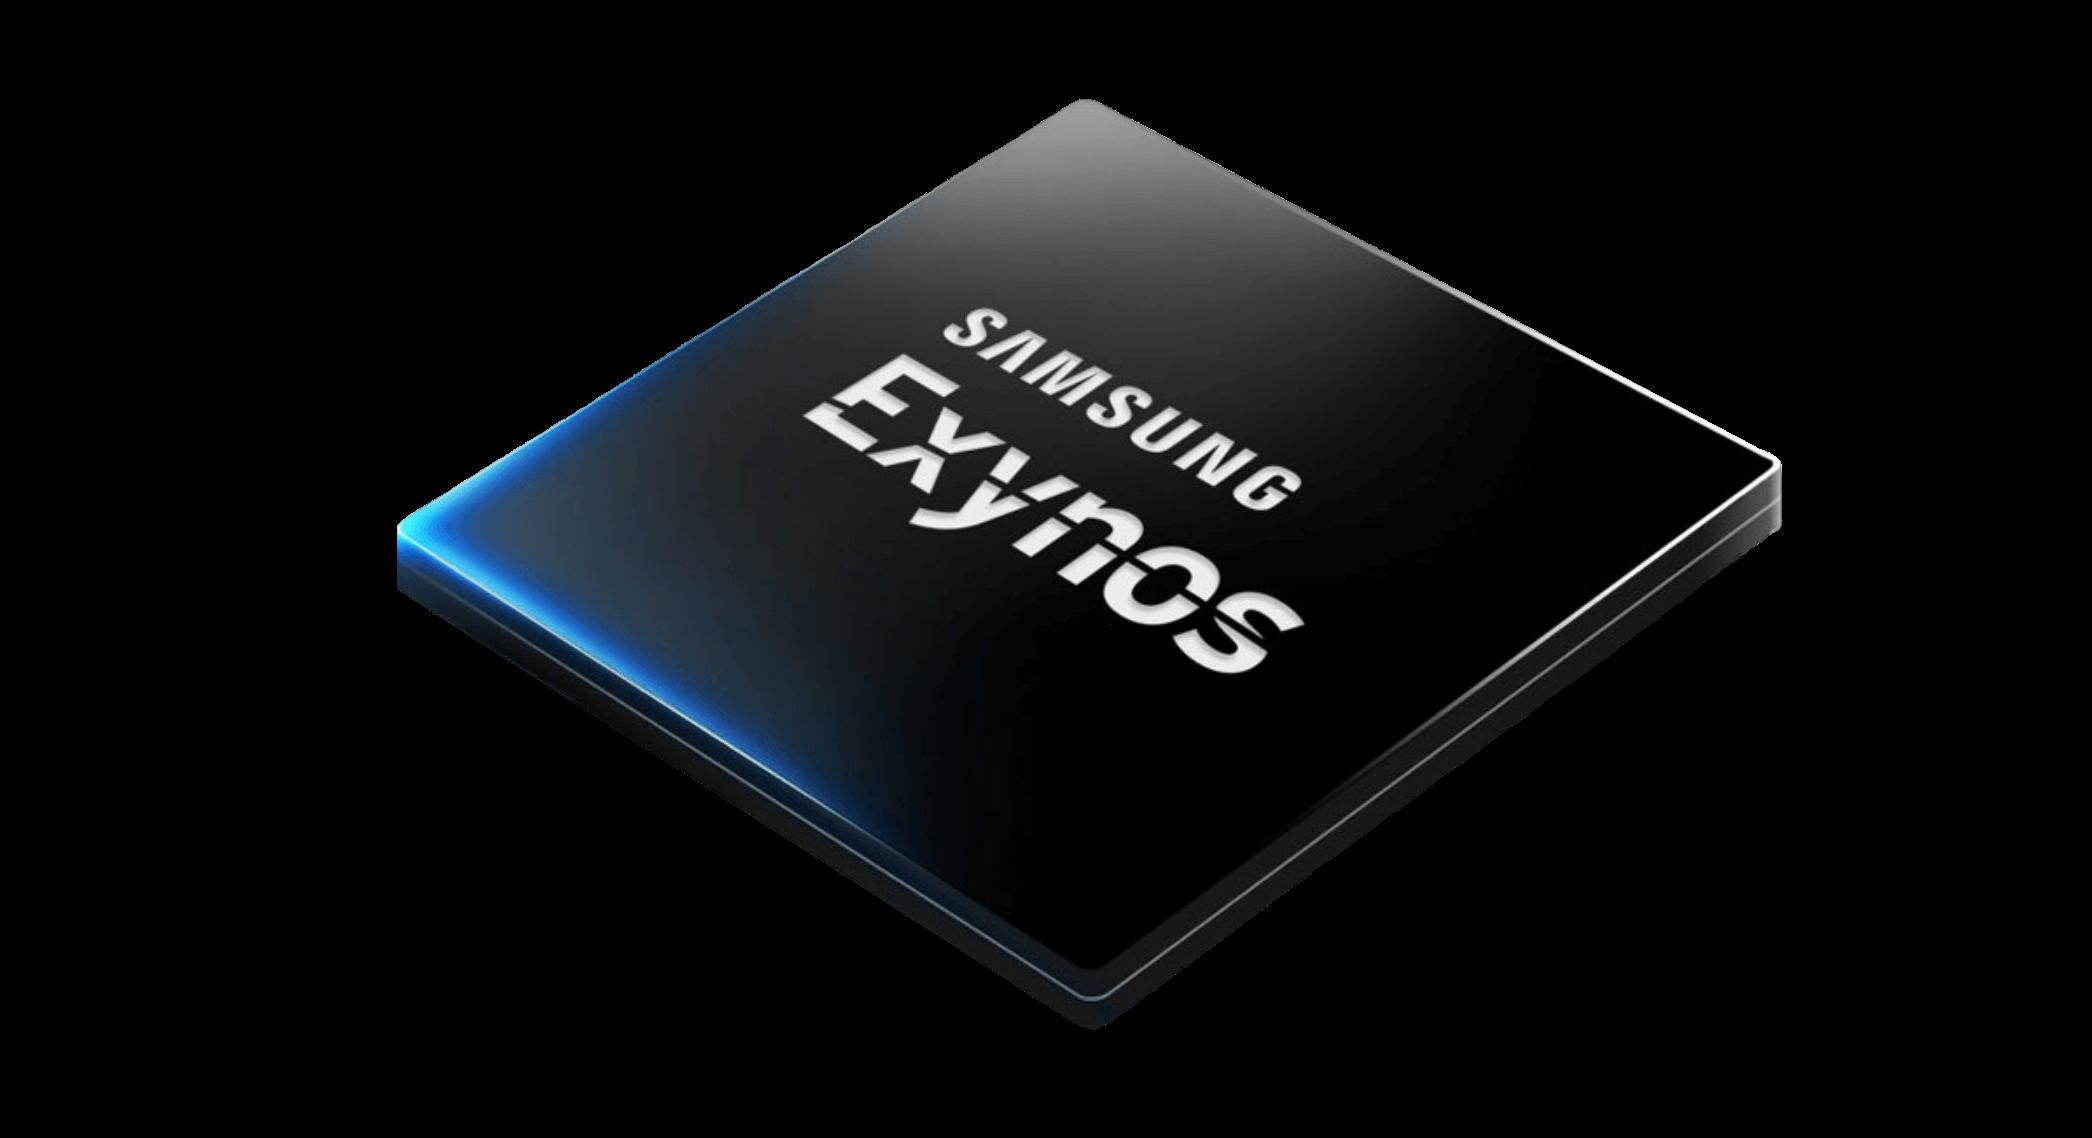 Procesor Samsung Exynos